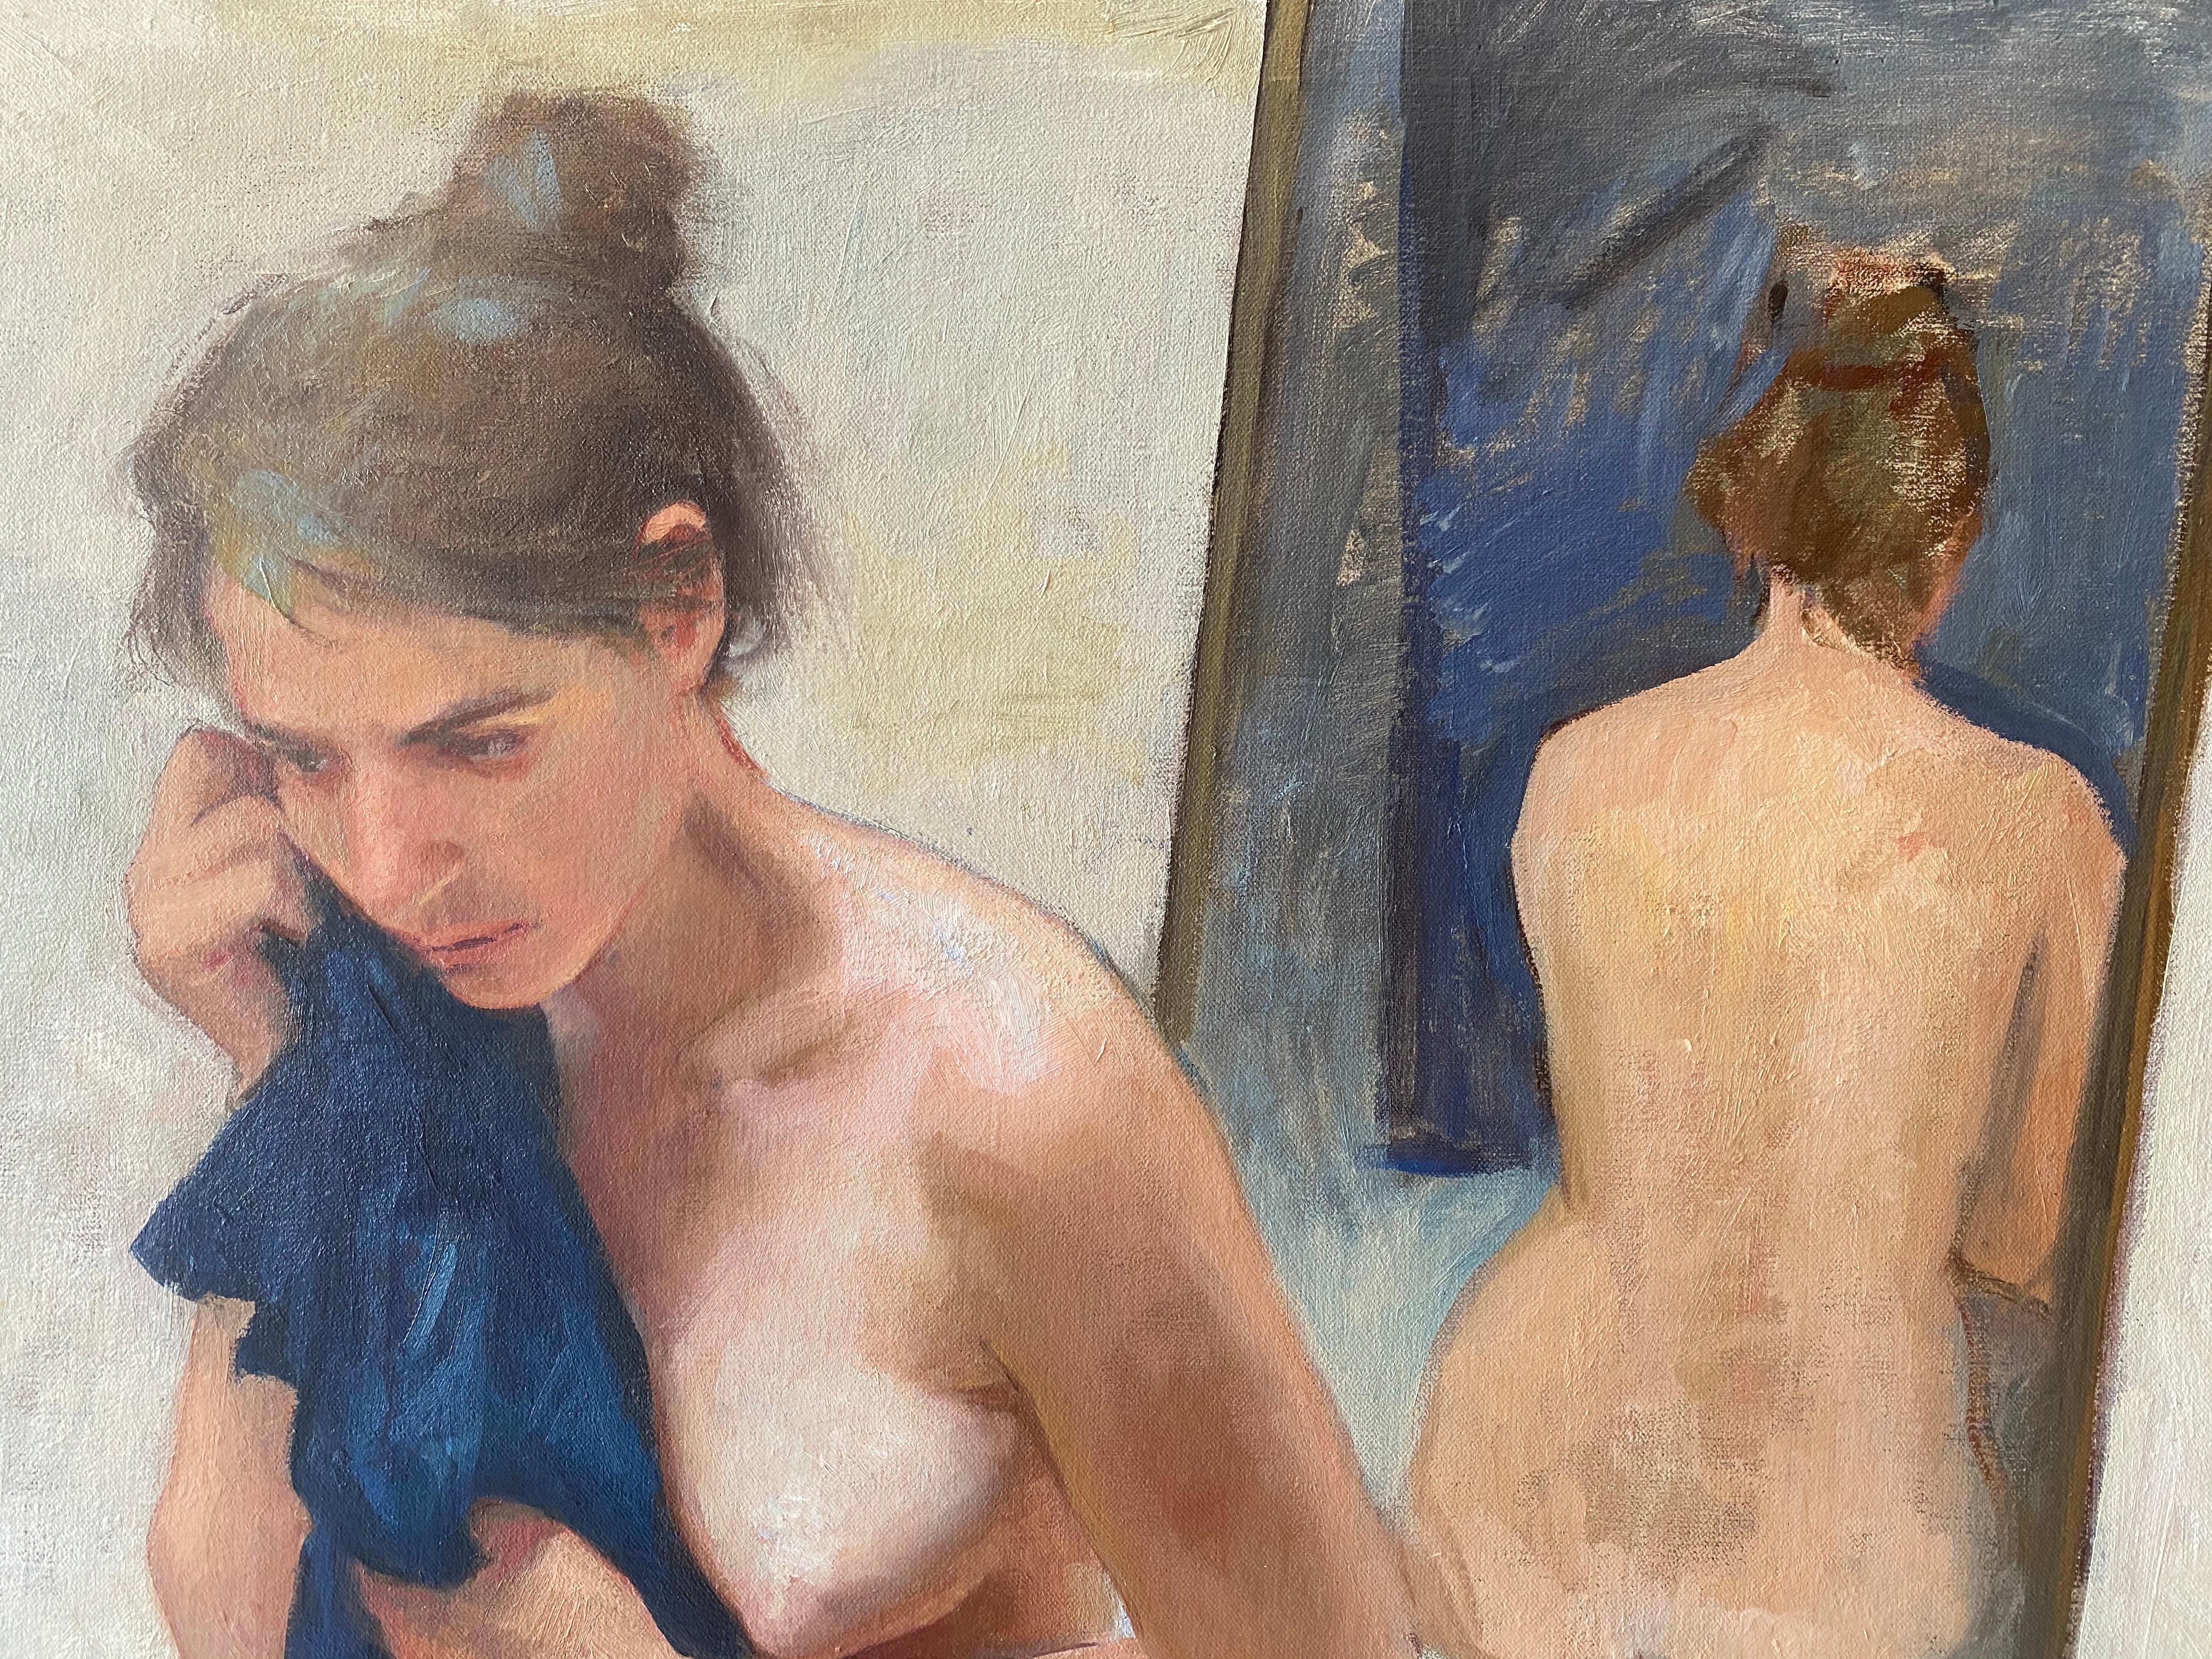 Une peinture à l'huile du peintre réaliste italien contemporain, Daniela Astone - Un personnage nu est assis sur un sol blanc et stérile. Un miroir présente le dos du personnage sous un autre angle. Elle tient une serviette jusqu'à son visage,